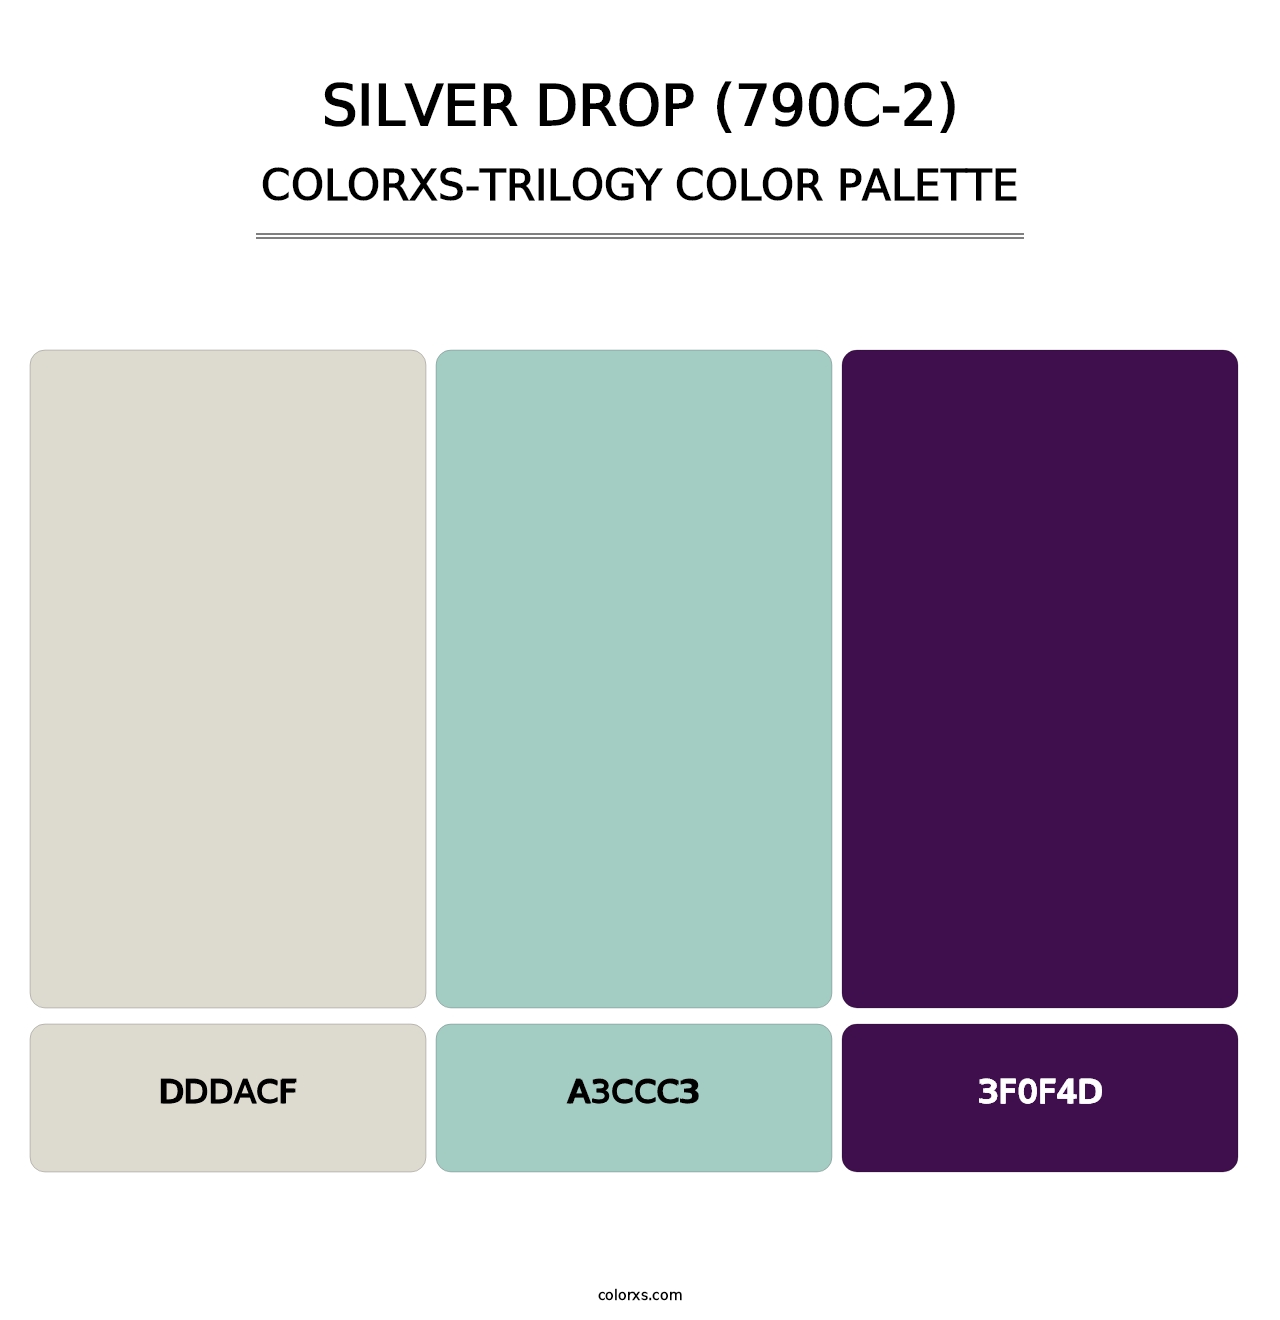 Silver Drop (790C-2) - Colorxs Trilogy Palette